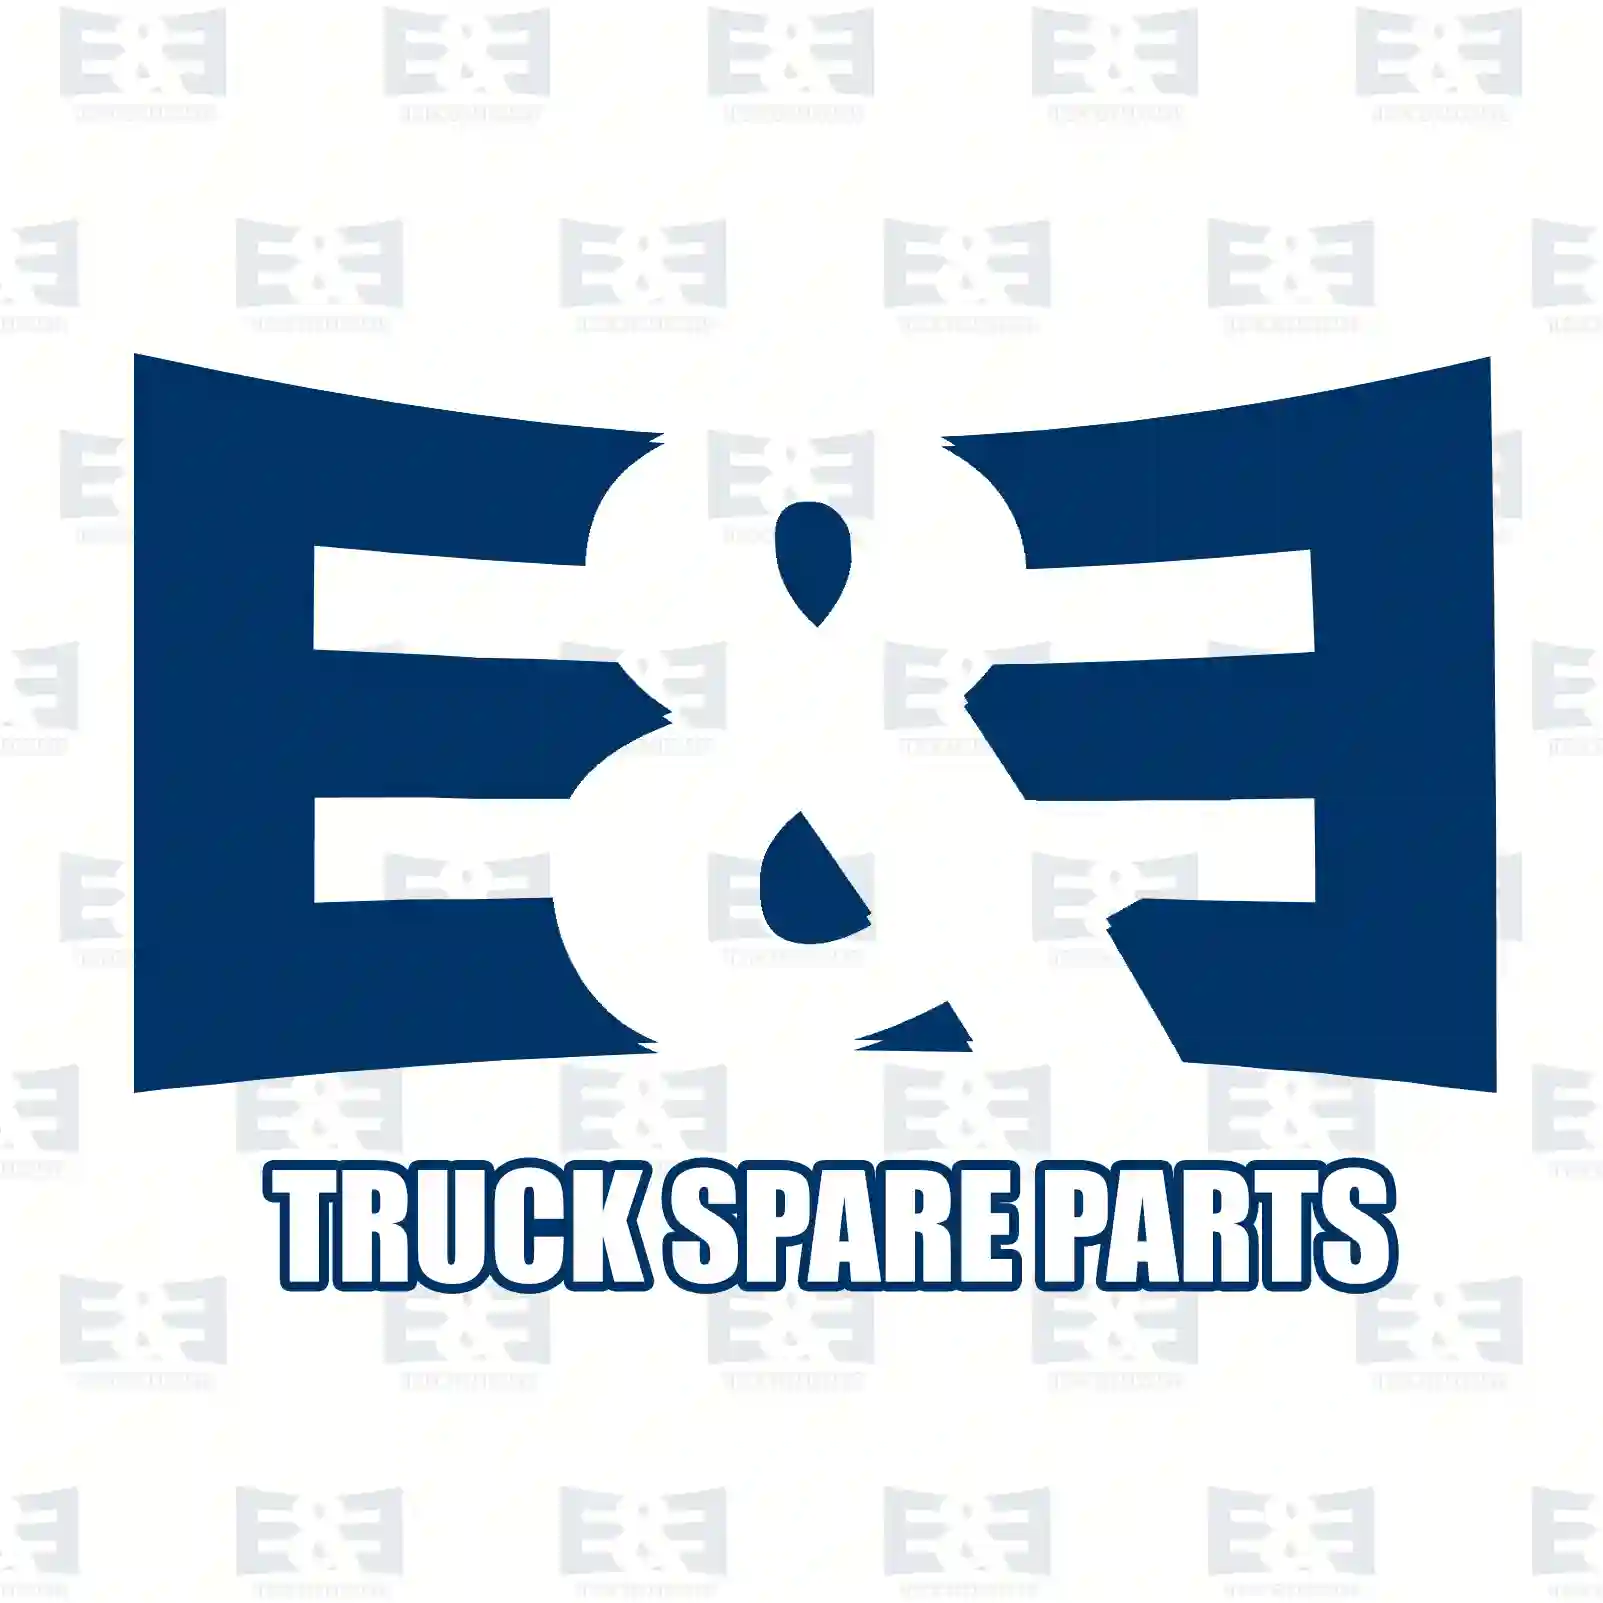 Brake cylinder, 2E2293945, 04817617, 4817617, , ||  2E2293945 E&E Truck Spare Parts | Truck Spare Parts, Auotomotive Spare Parts Brake cylinder, 2E2293945, 04817617, 4817617, , ||  2E2293945 E&E Truck Spare Parts | Truck Spare Parts, Auotomotive Spare Parts